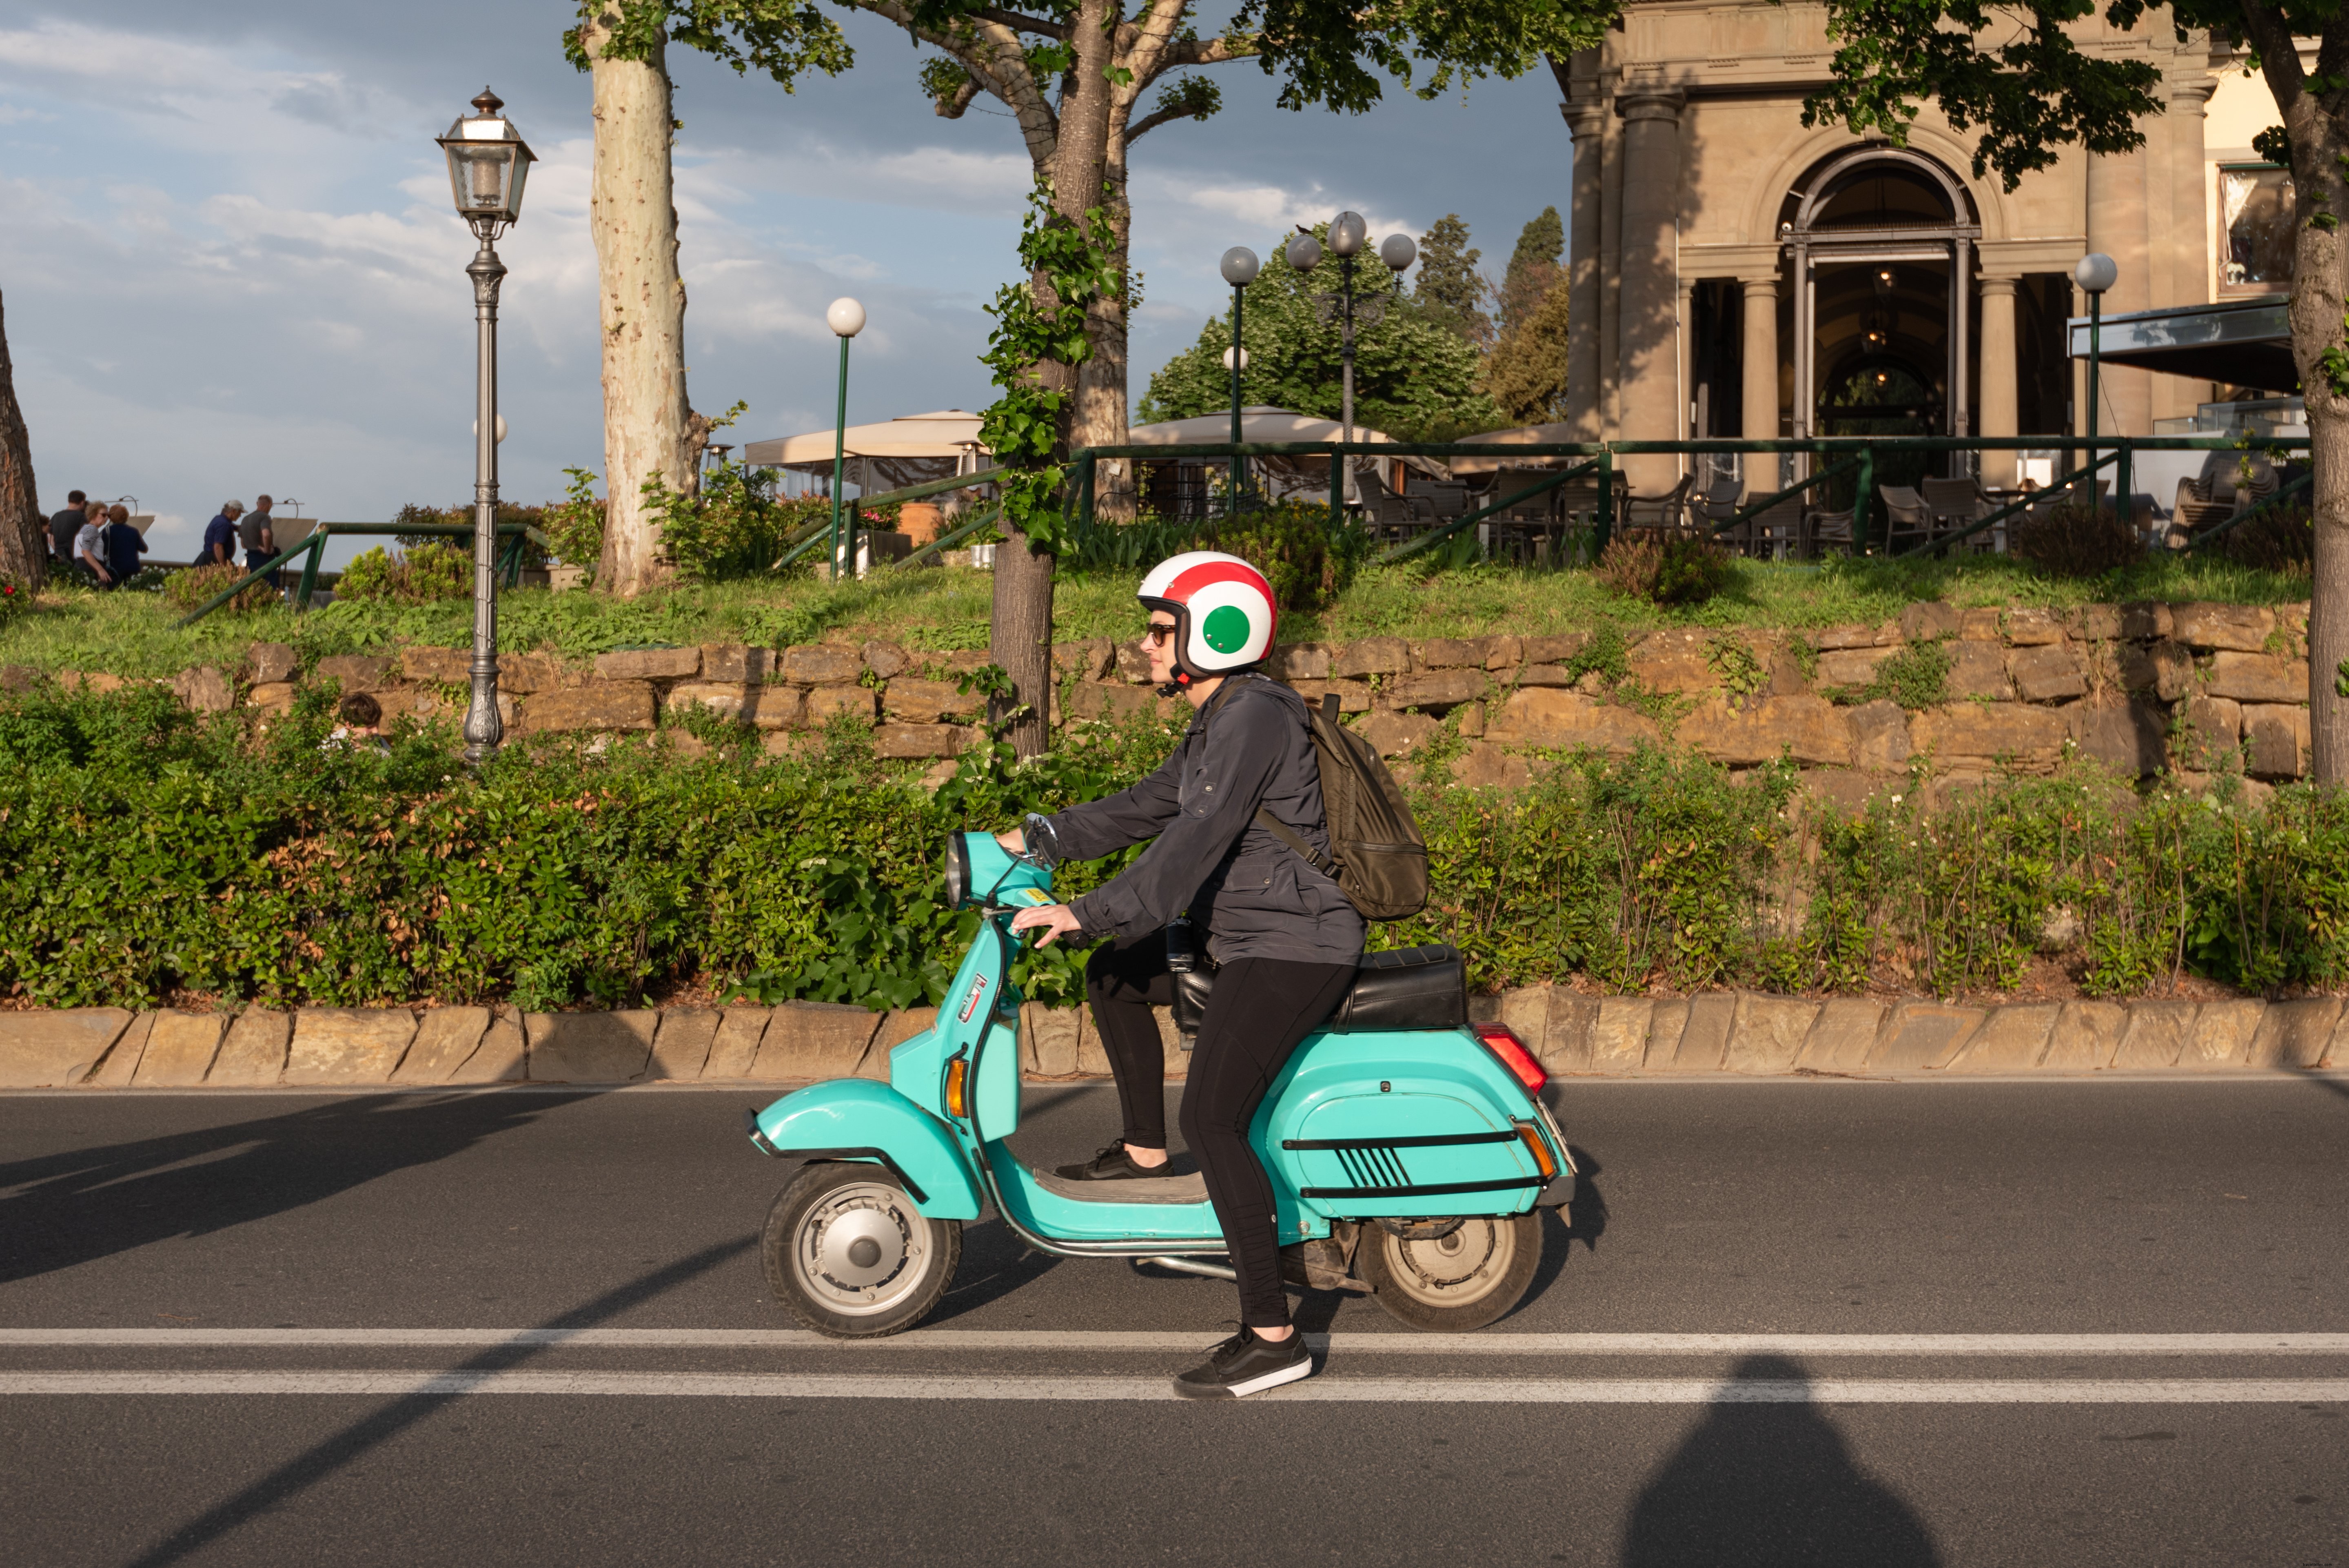 Foto de uma mulher em um ciclomotor turquesa em uma rodovia